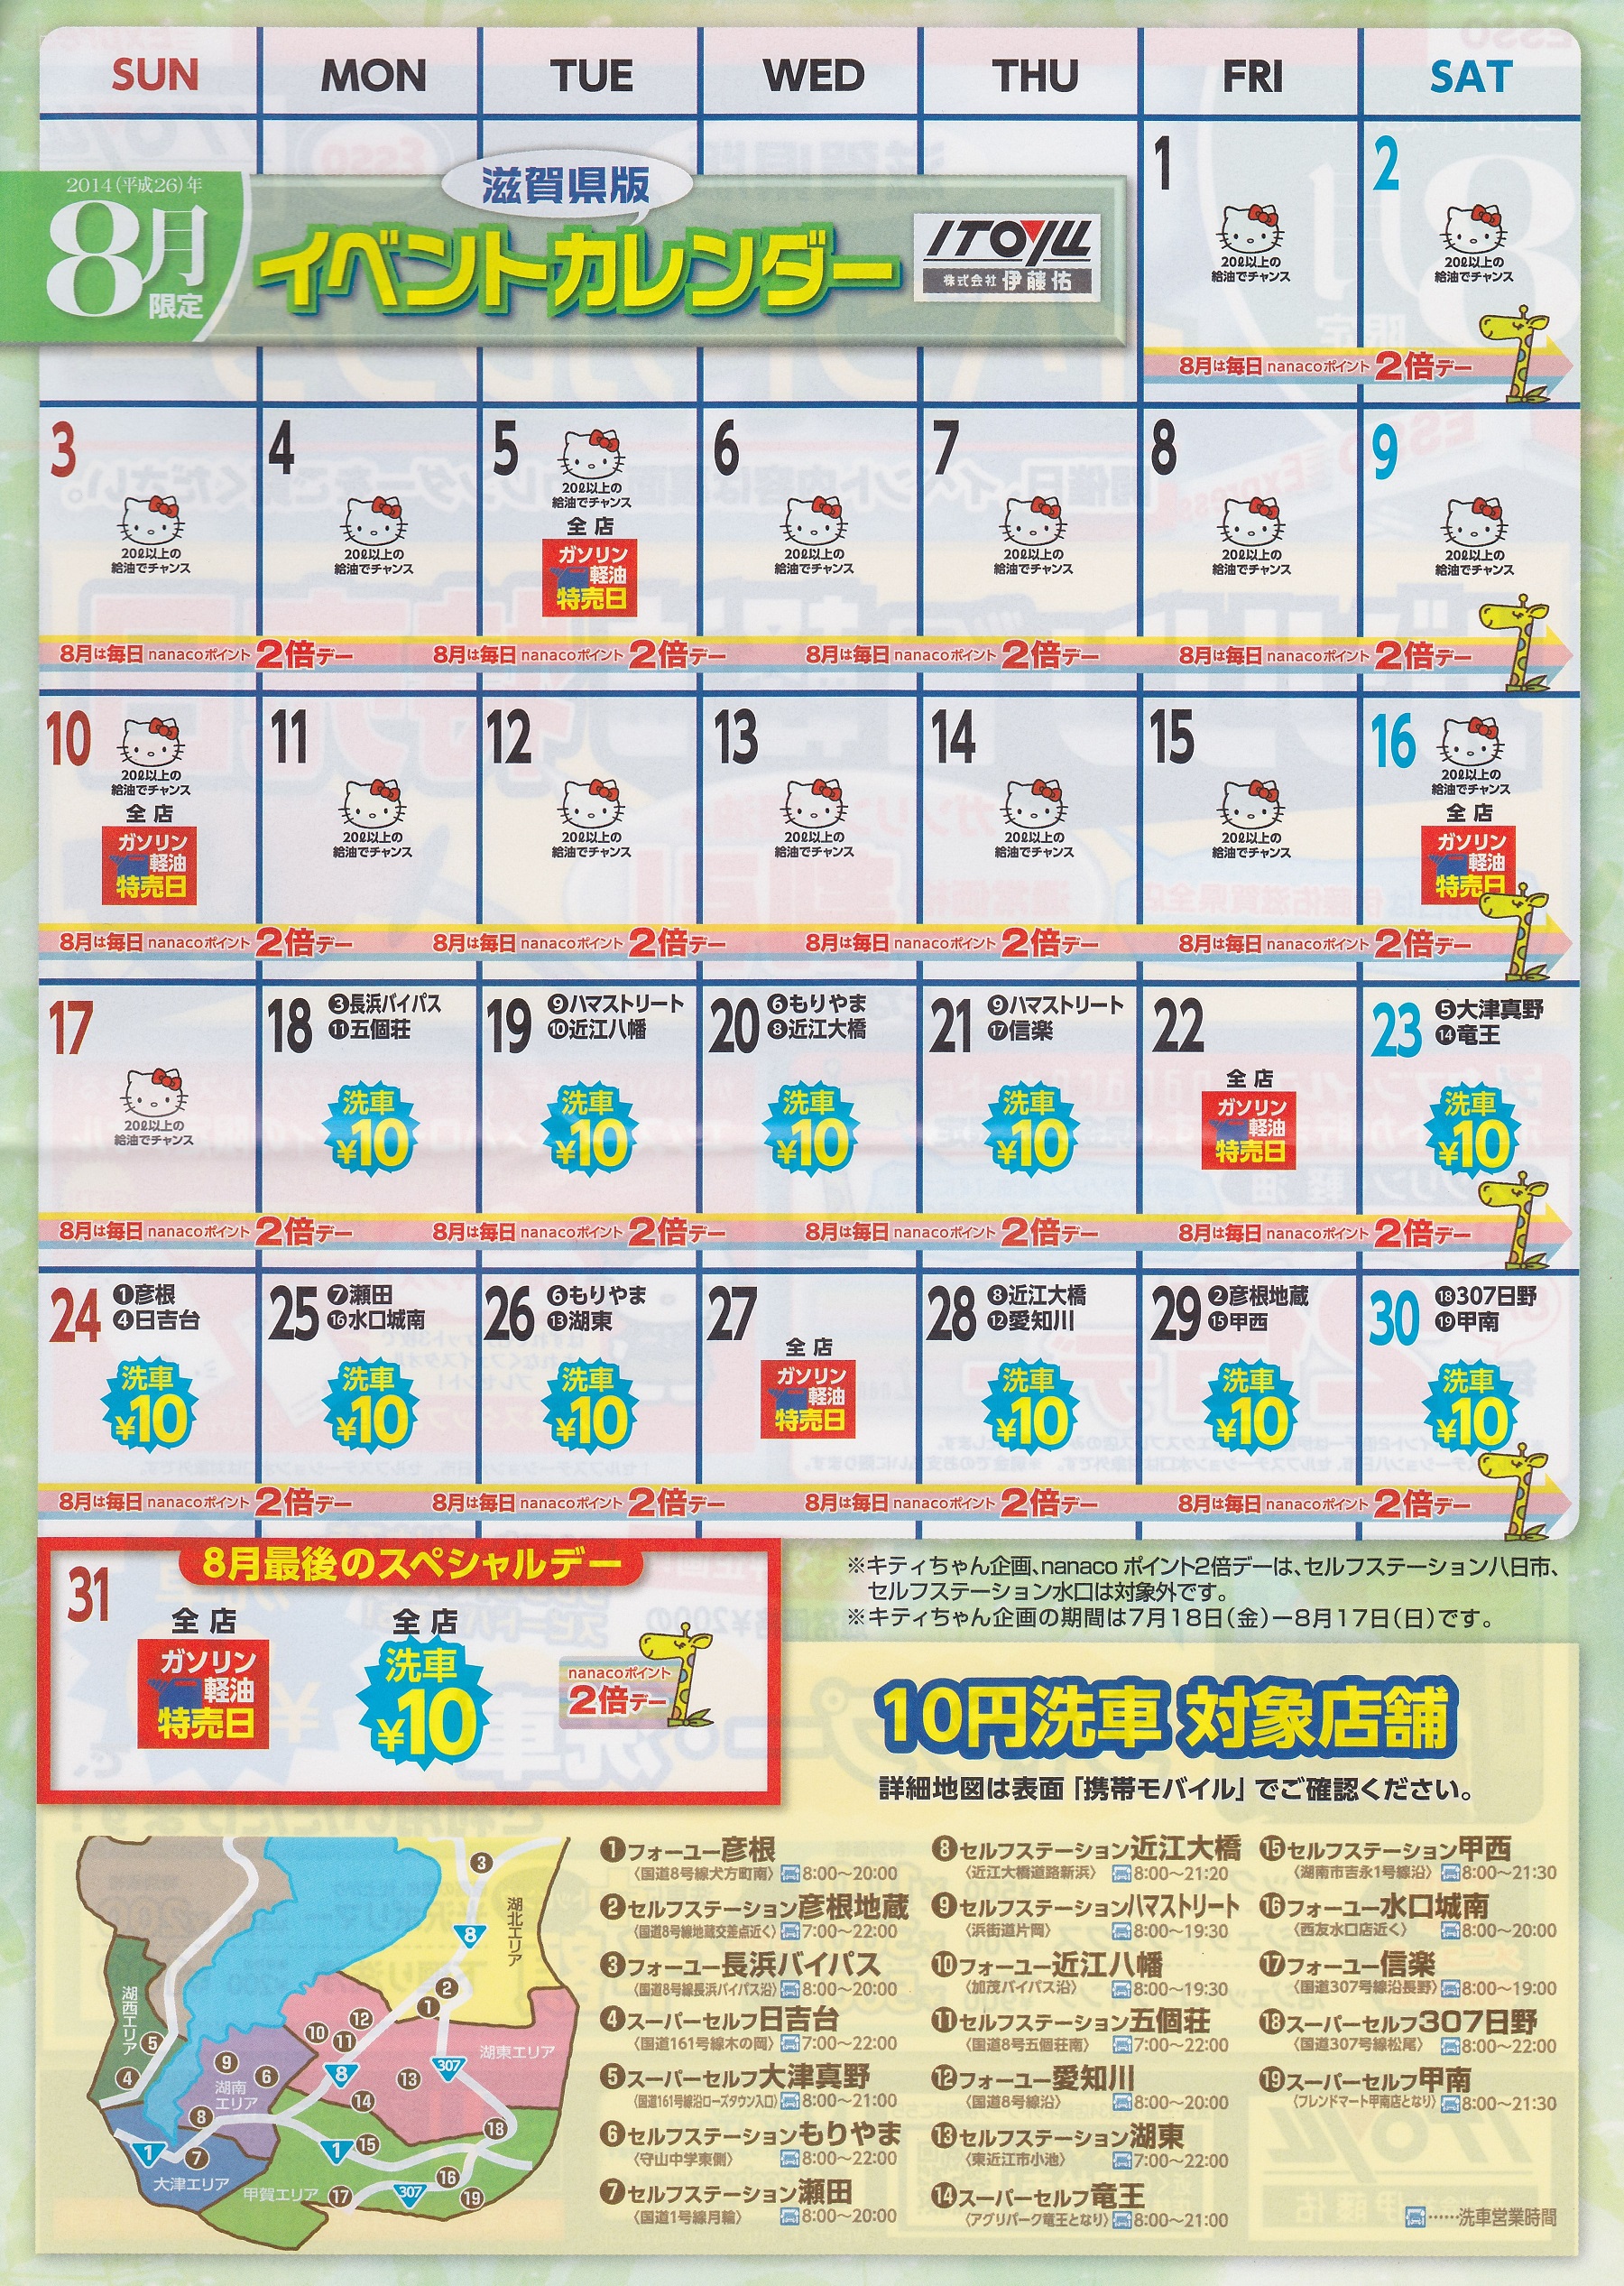 よしよしタキシス 守山市 伊藤佑のガソリン特売日イベントカレンダー 14年８月